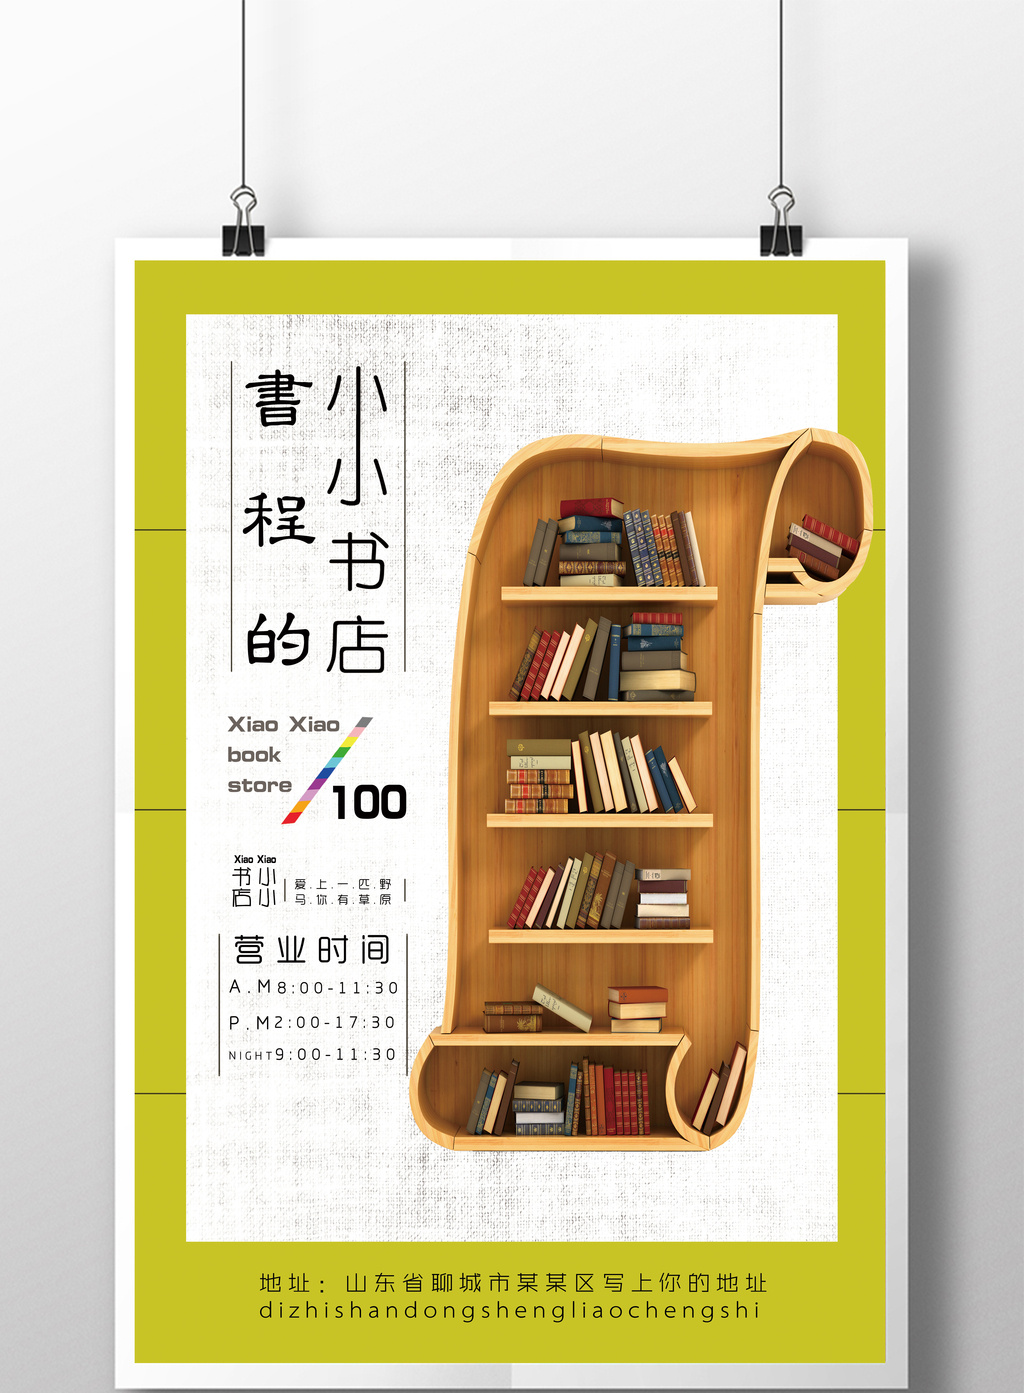 书店创意宣传海报模板免费下载 _广告设计图片设计